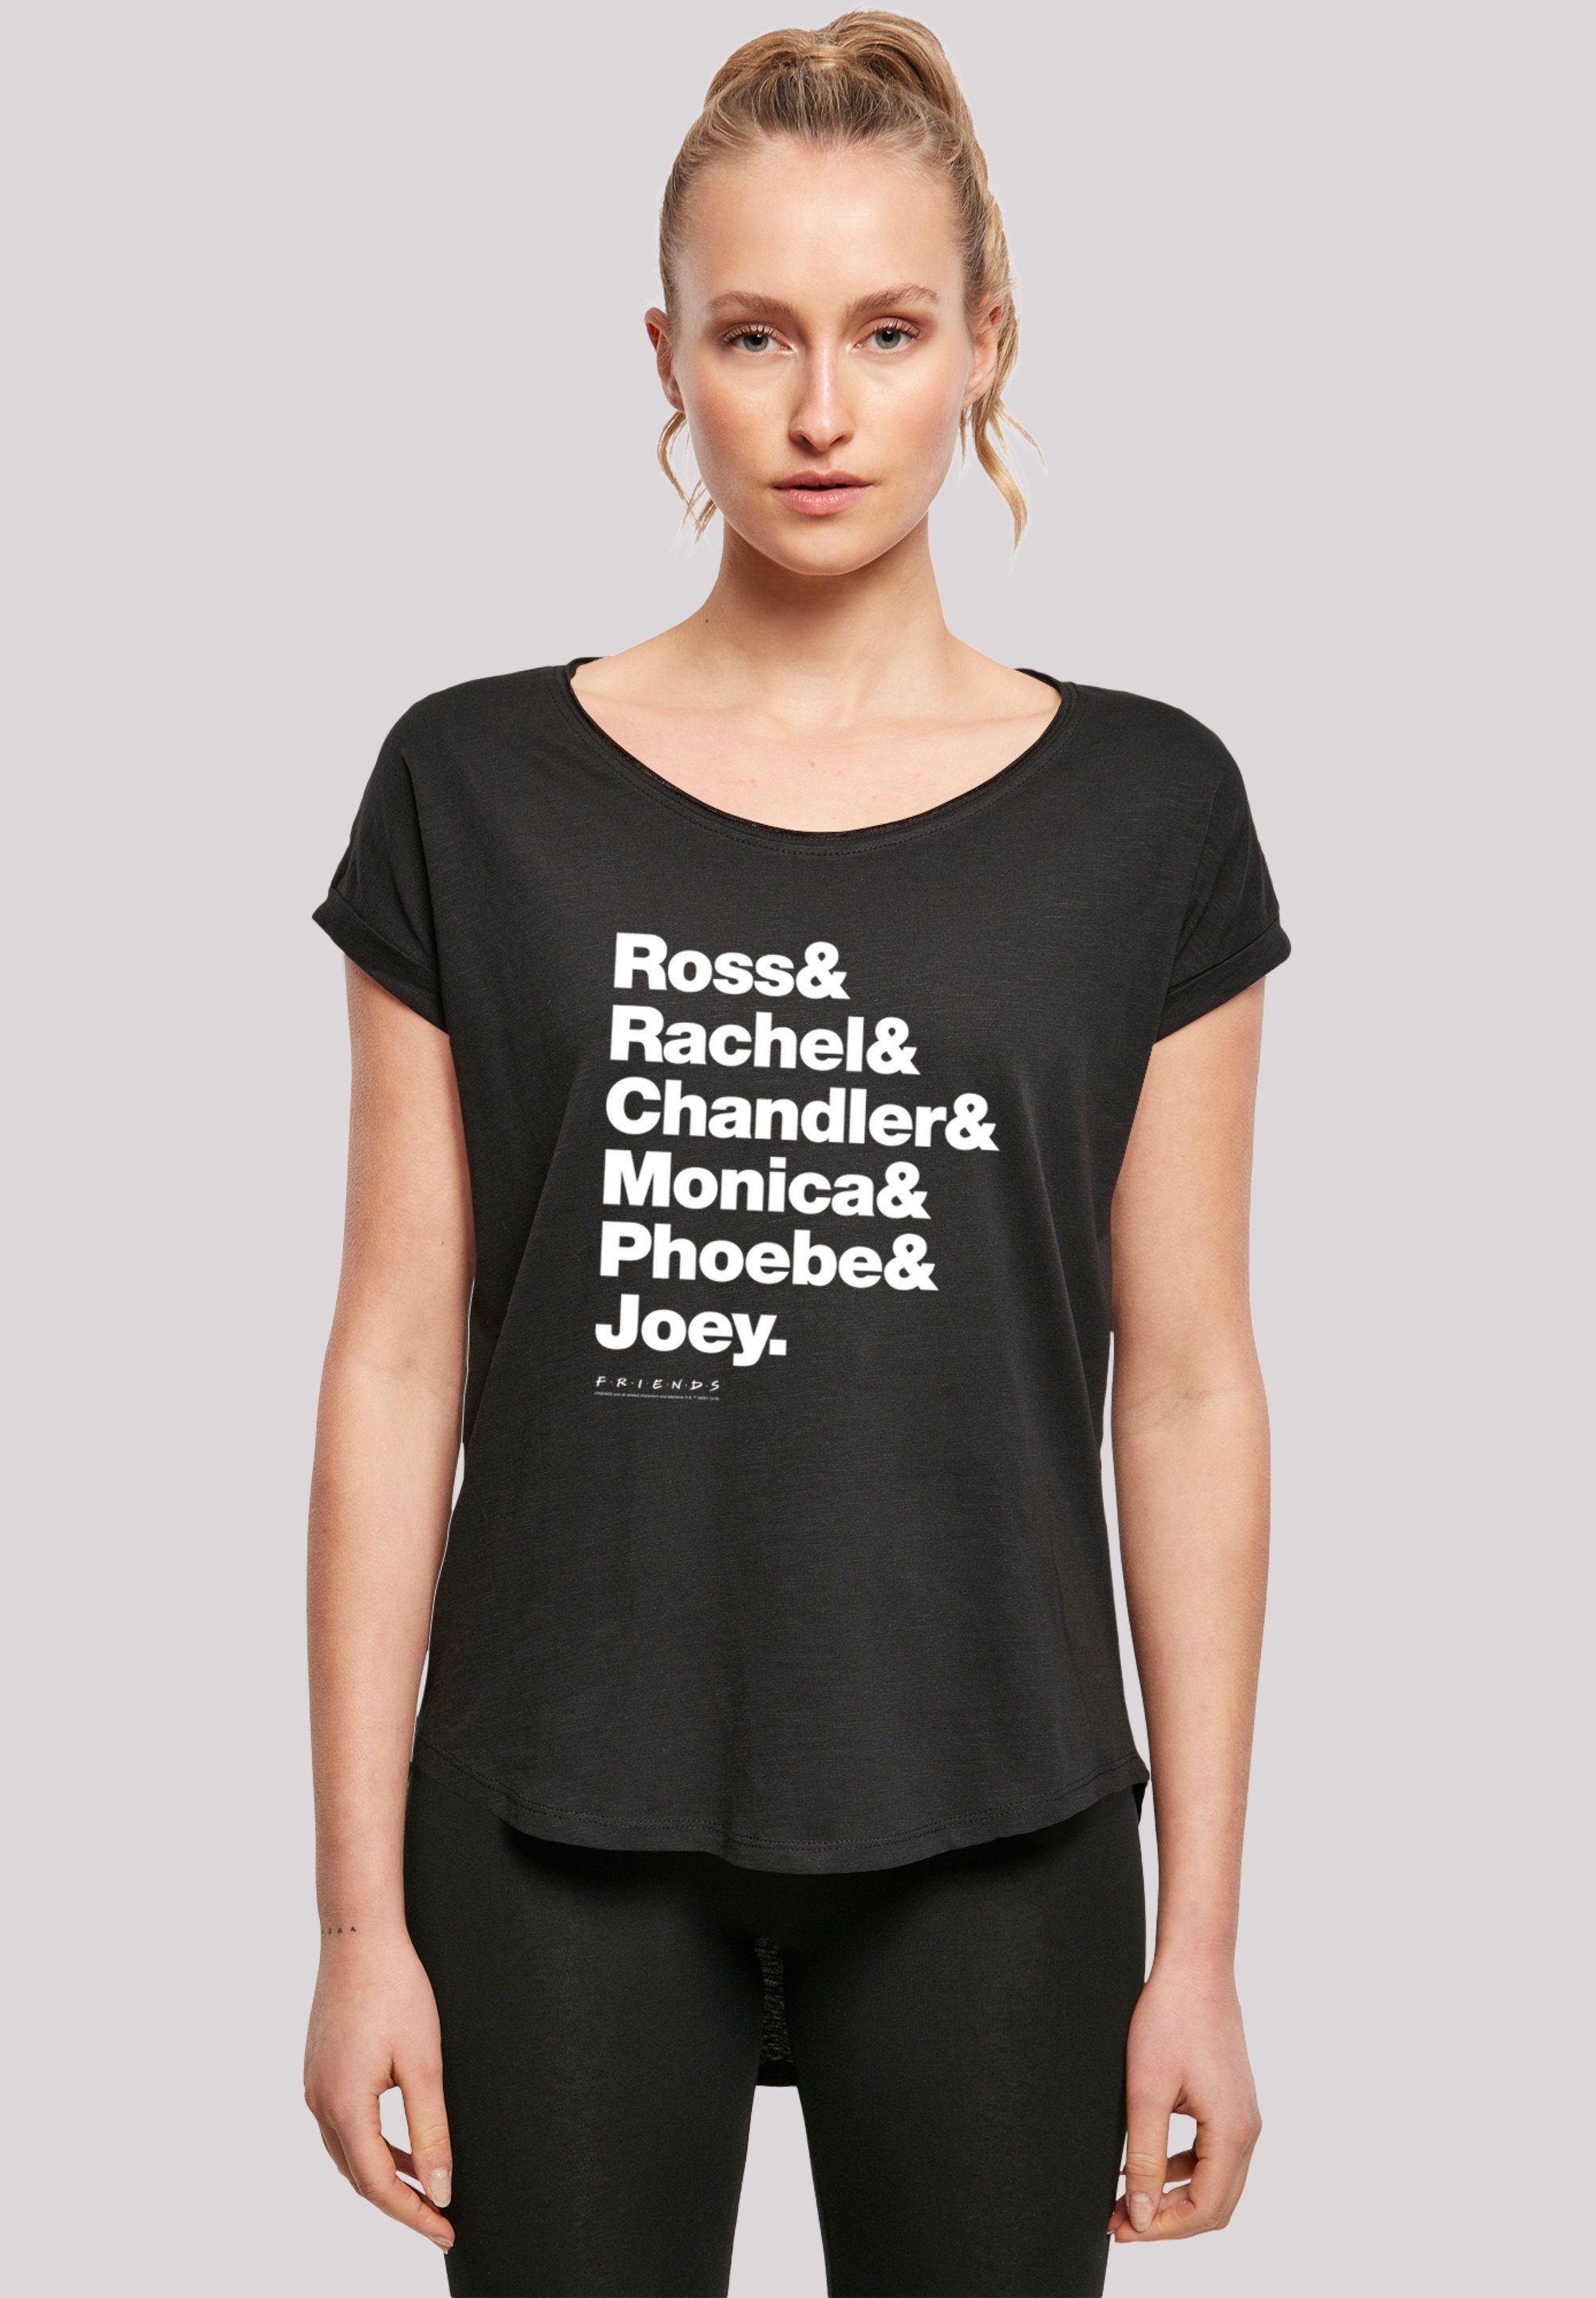 F4NT4STIC T-Shirt Joey & & Ross Phoebe Chandler FRIENDS Print Monica & & & Rachel